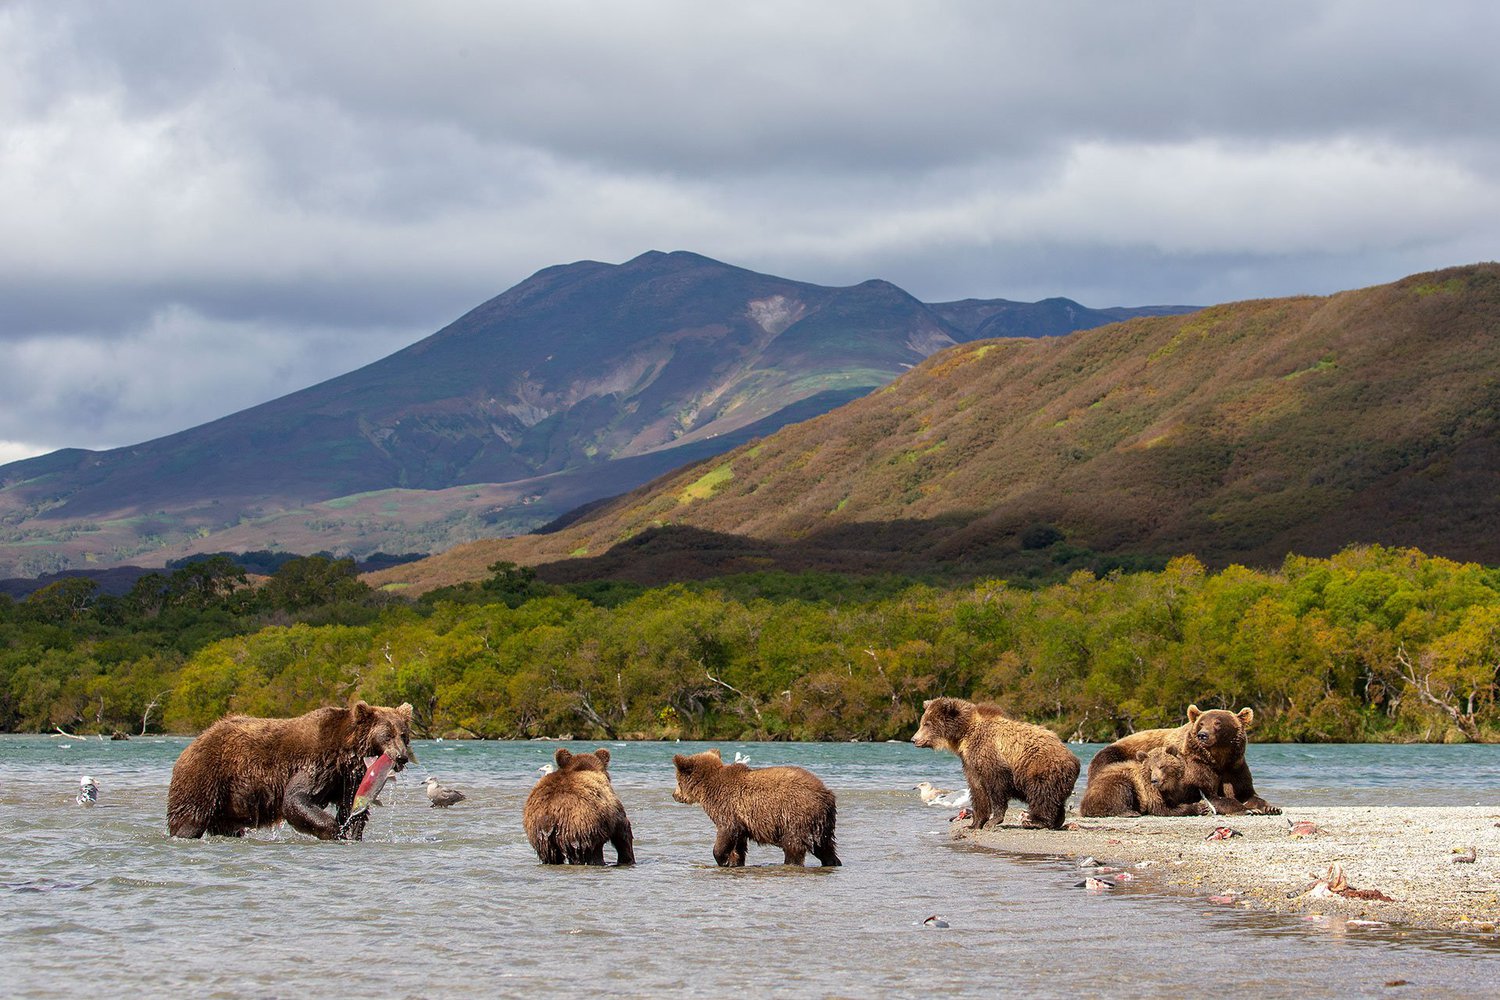 Обучающий курс Камчатка: вулканы, медведи, рыба - изучайте уникальный природный мир Камчатки